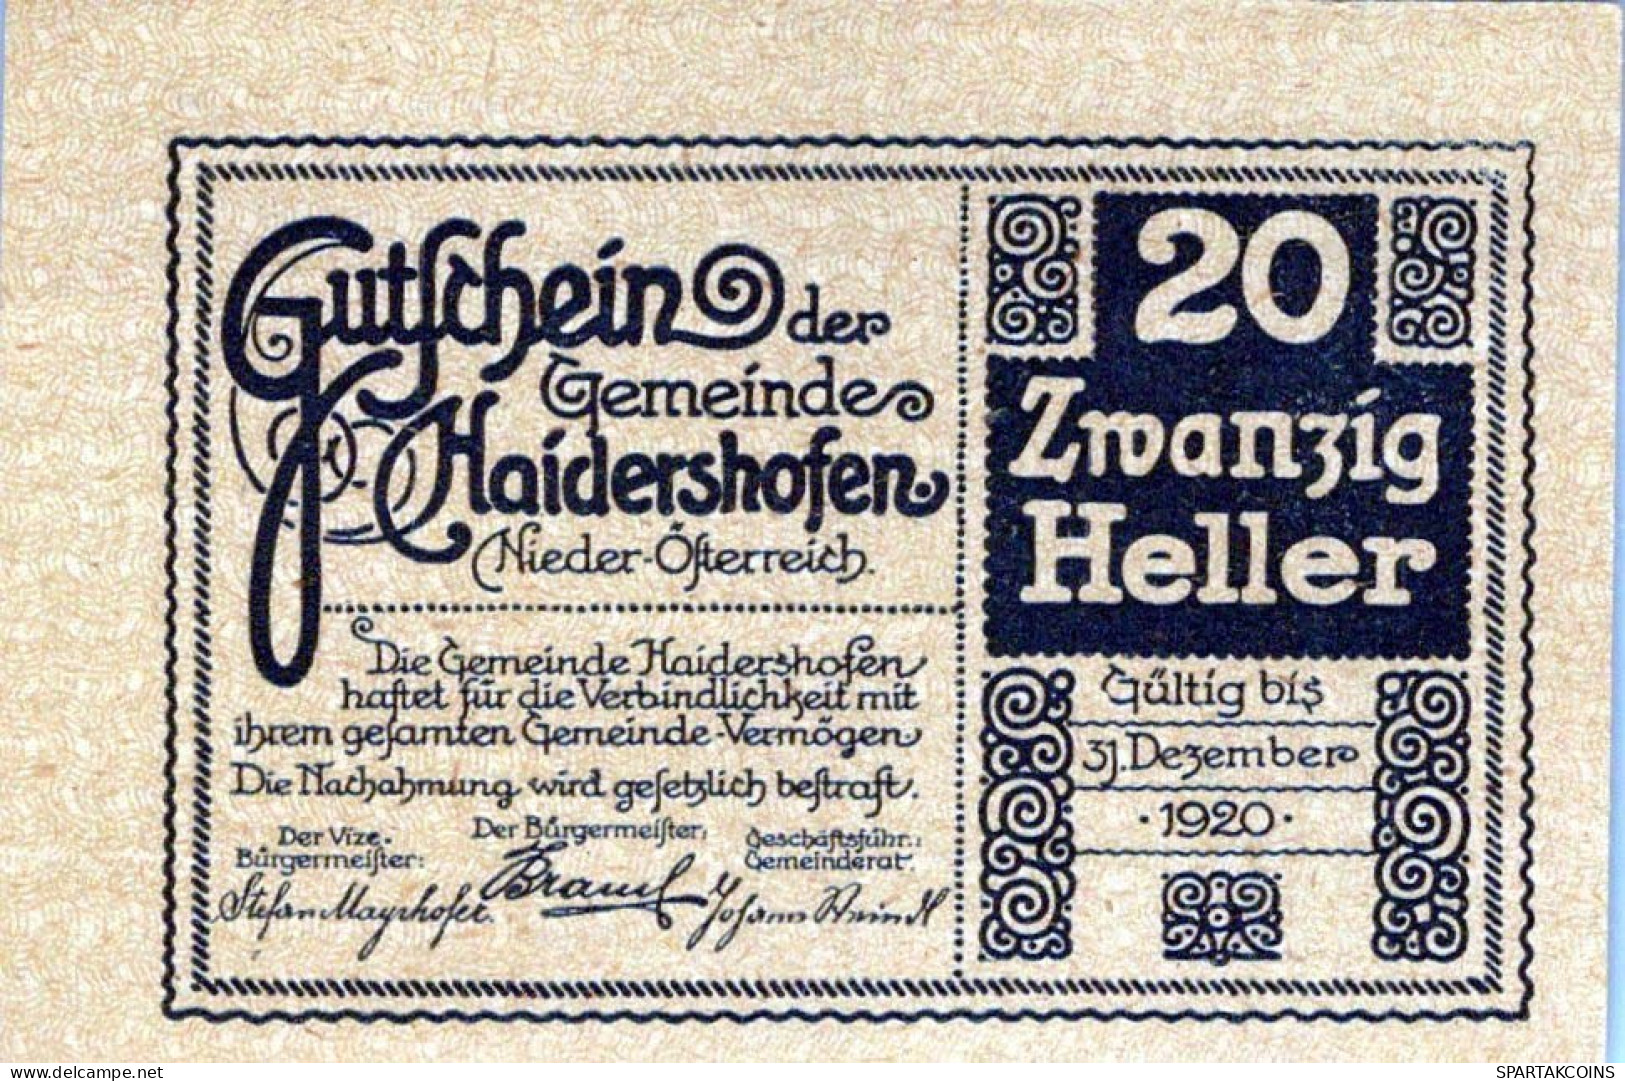 20 HELLER 1920 Stadt HAIDERSHOFEN Niedrigeren Österreich Notgeld Papiergeld Banknote #PG870 - [11] Local Banknote Issues